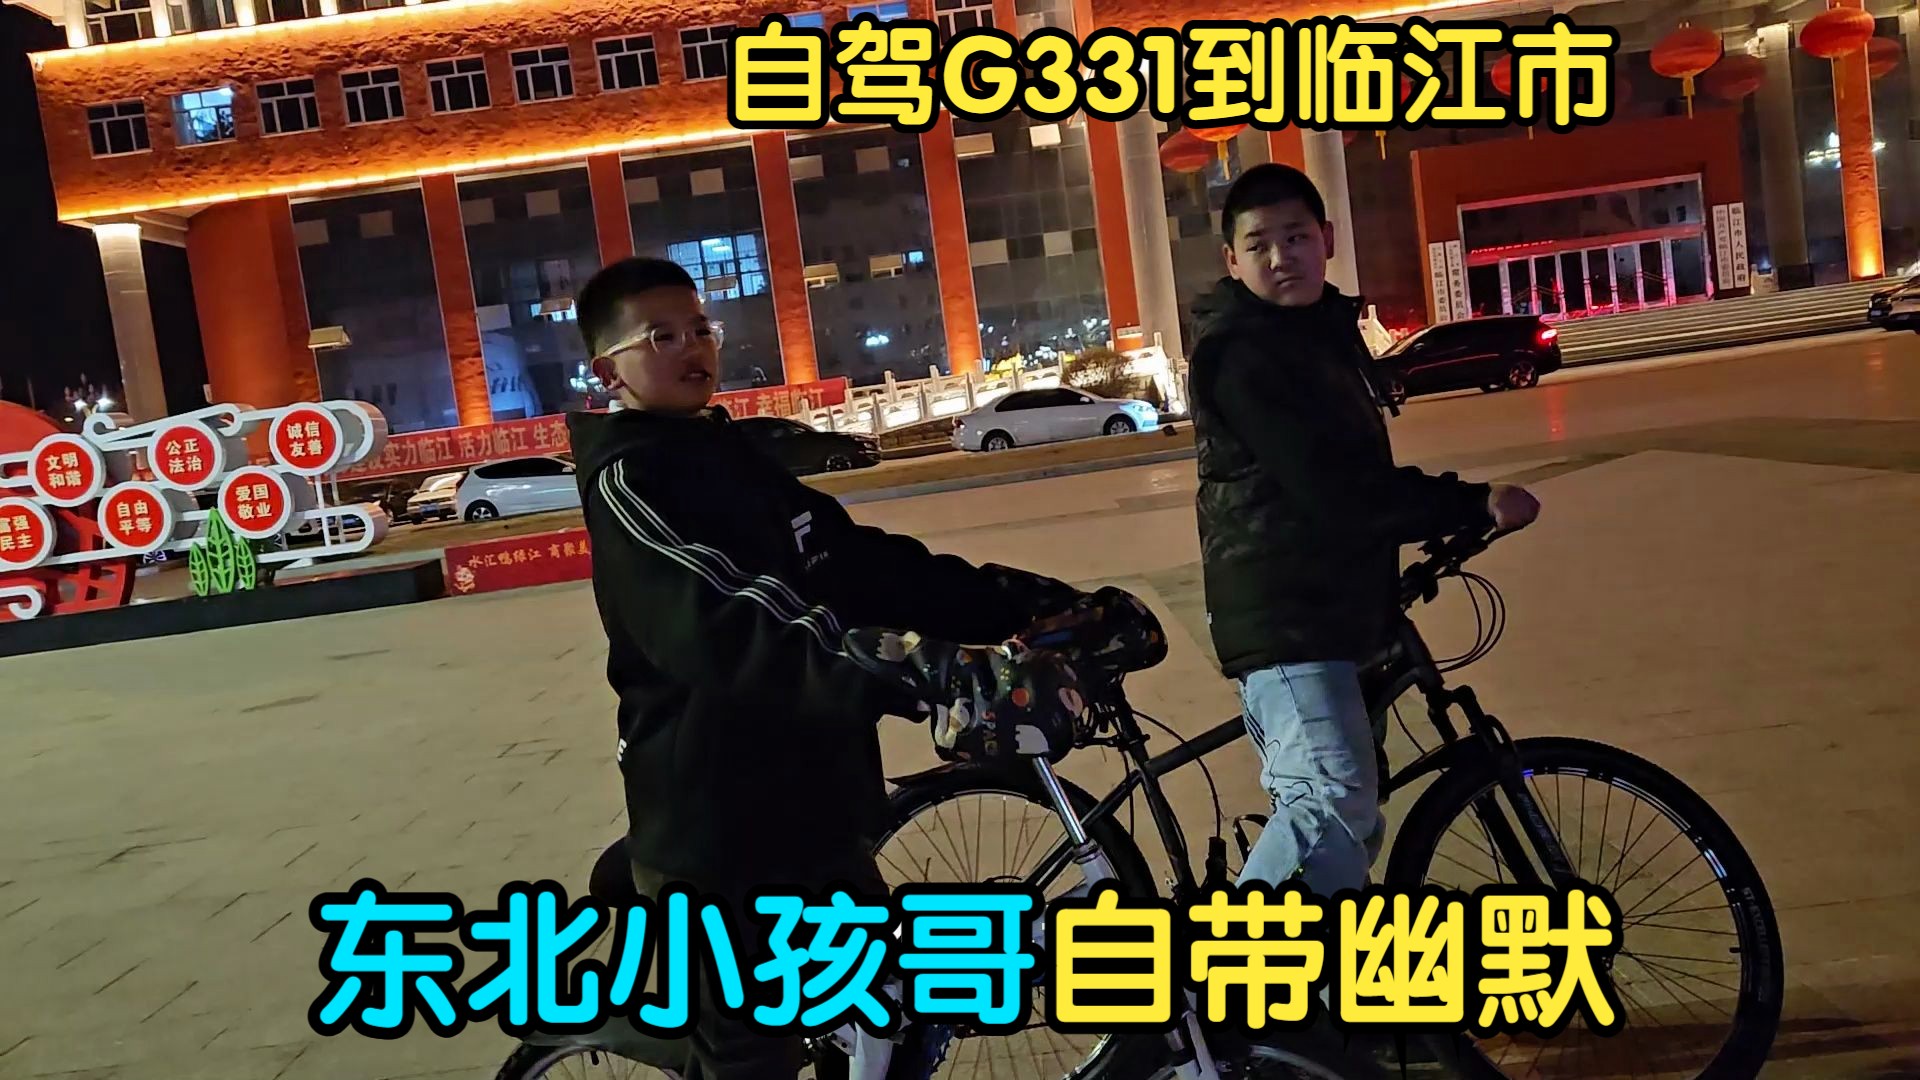 自驾国道331到达临江市，拍夜景遇东北小孩哥真逗，无人机炸机了